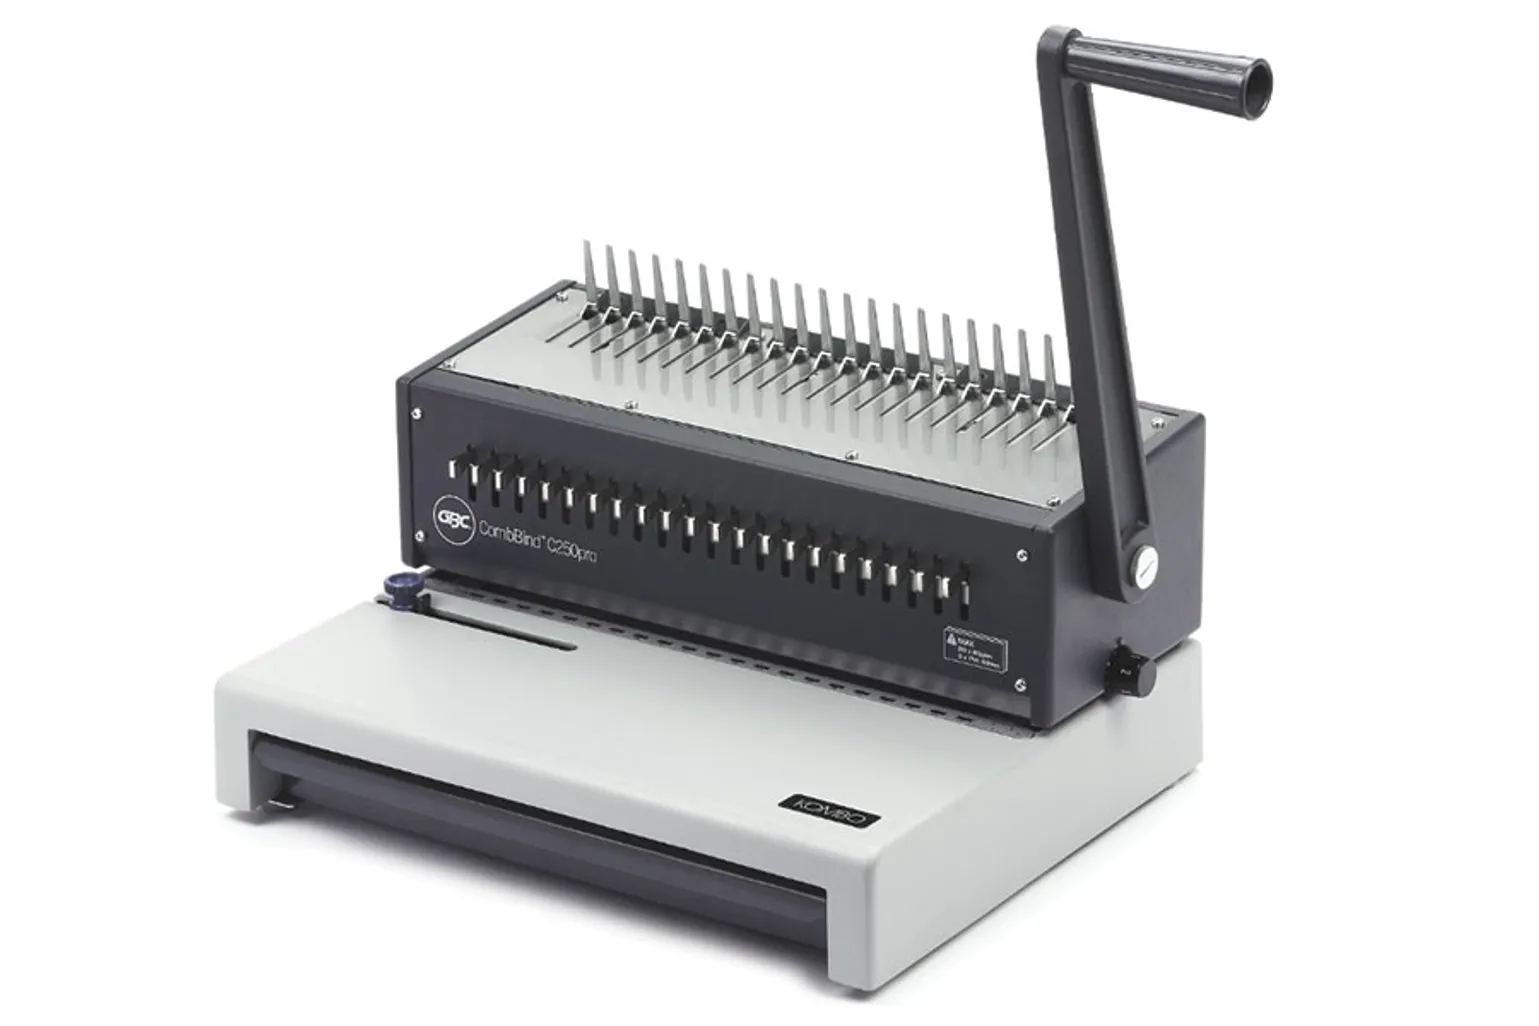 c250 pro kombo comb binding machine